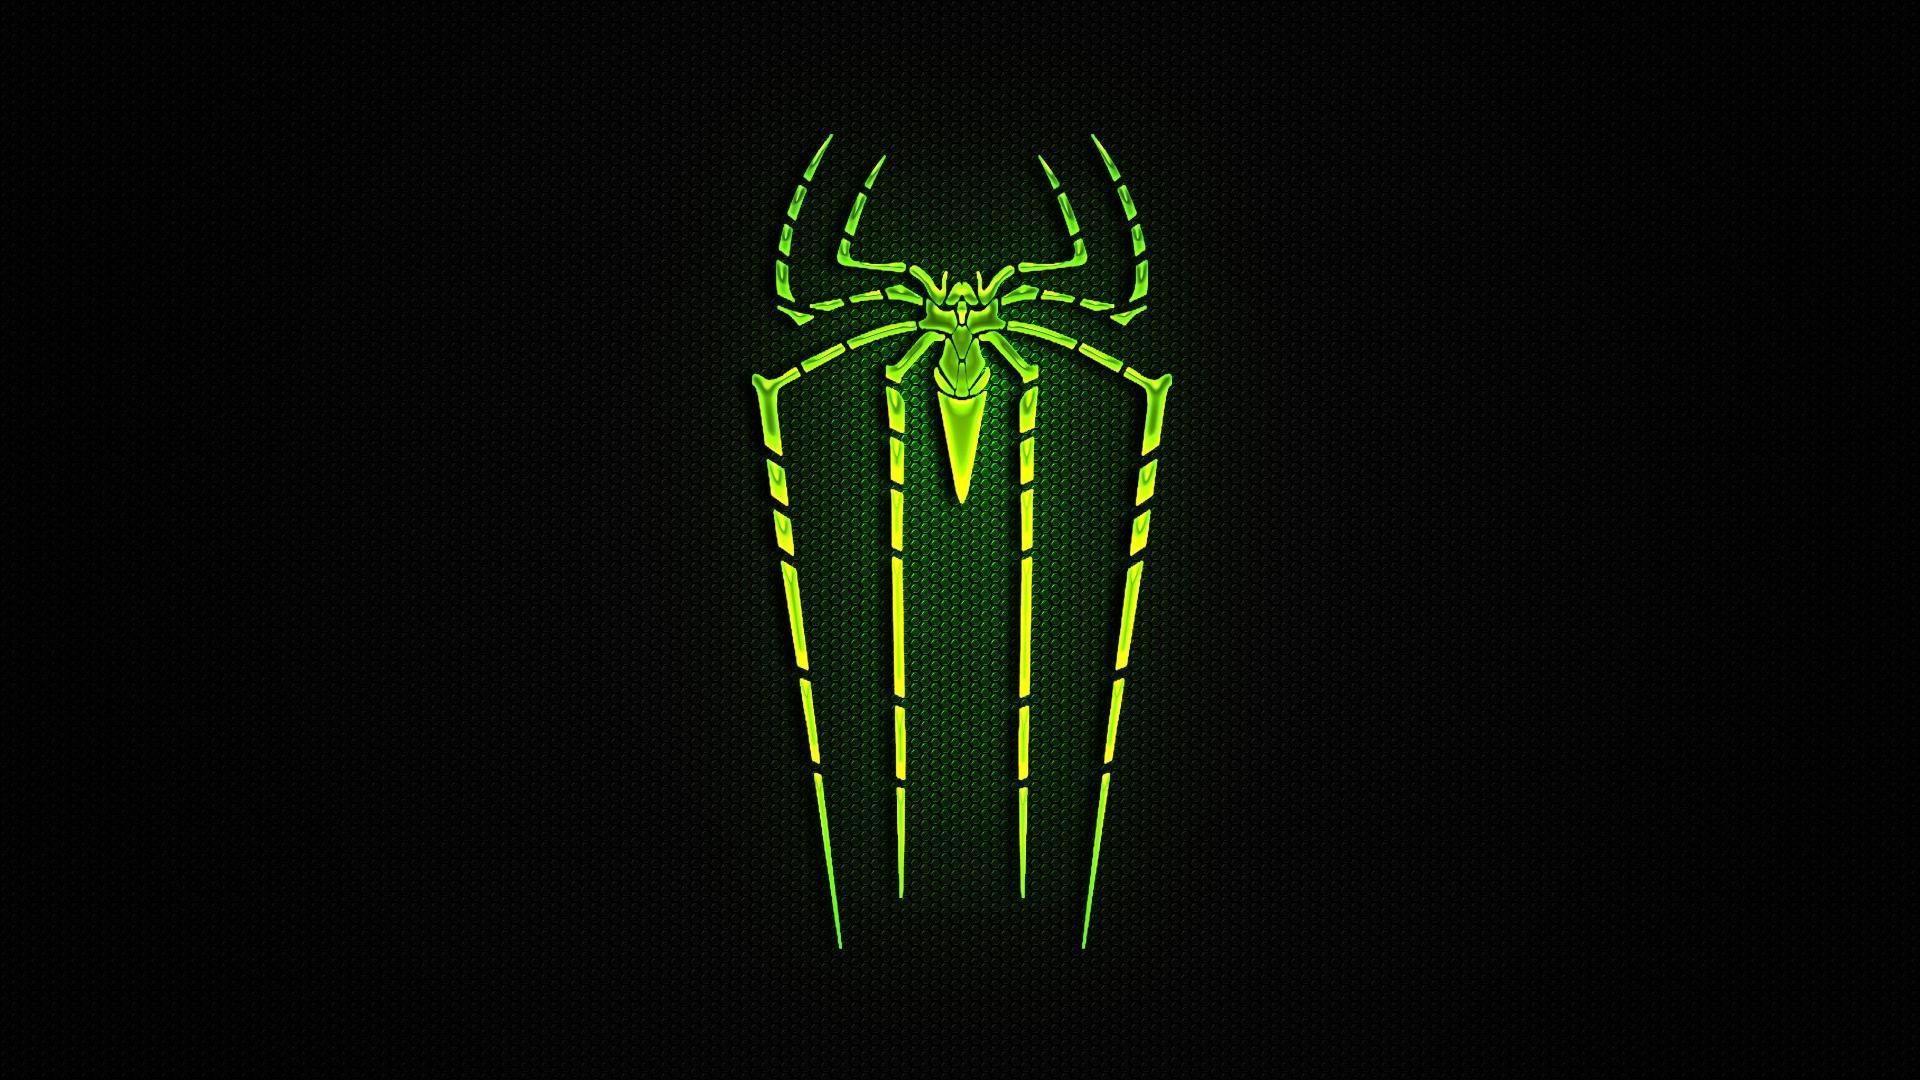 1920x1080 Hình nền logo người nhện tuyệt vời